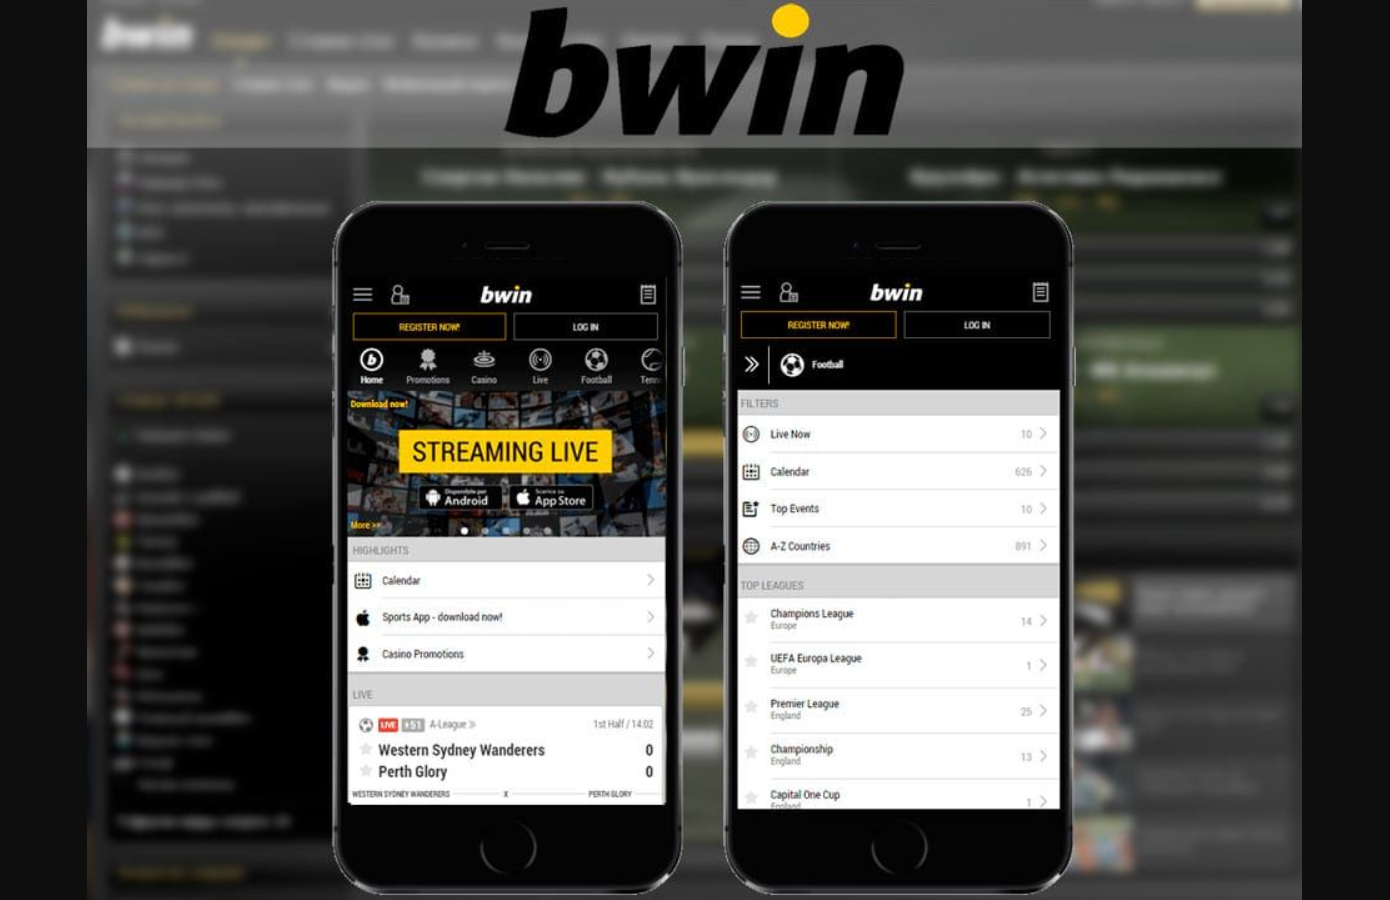 ¿Qué debe hacer para descargar Bwin app for iPhone?